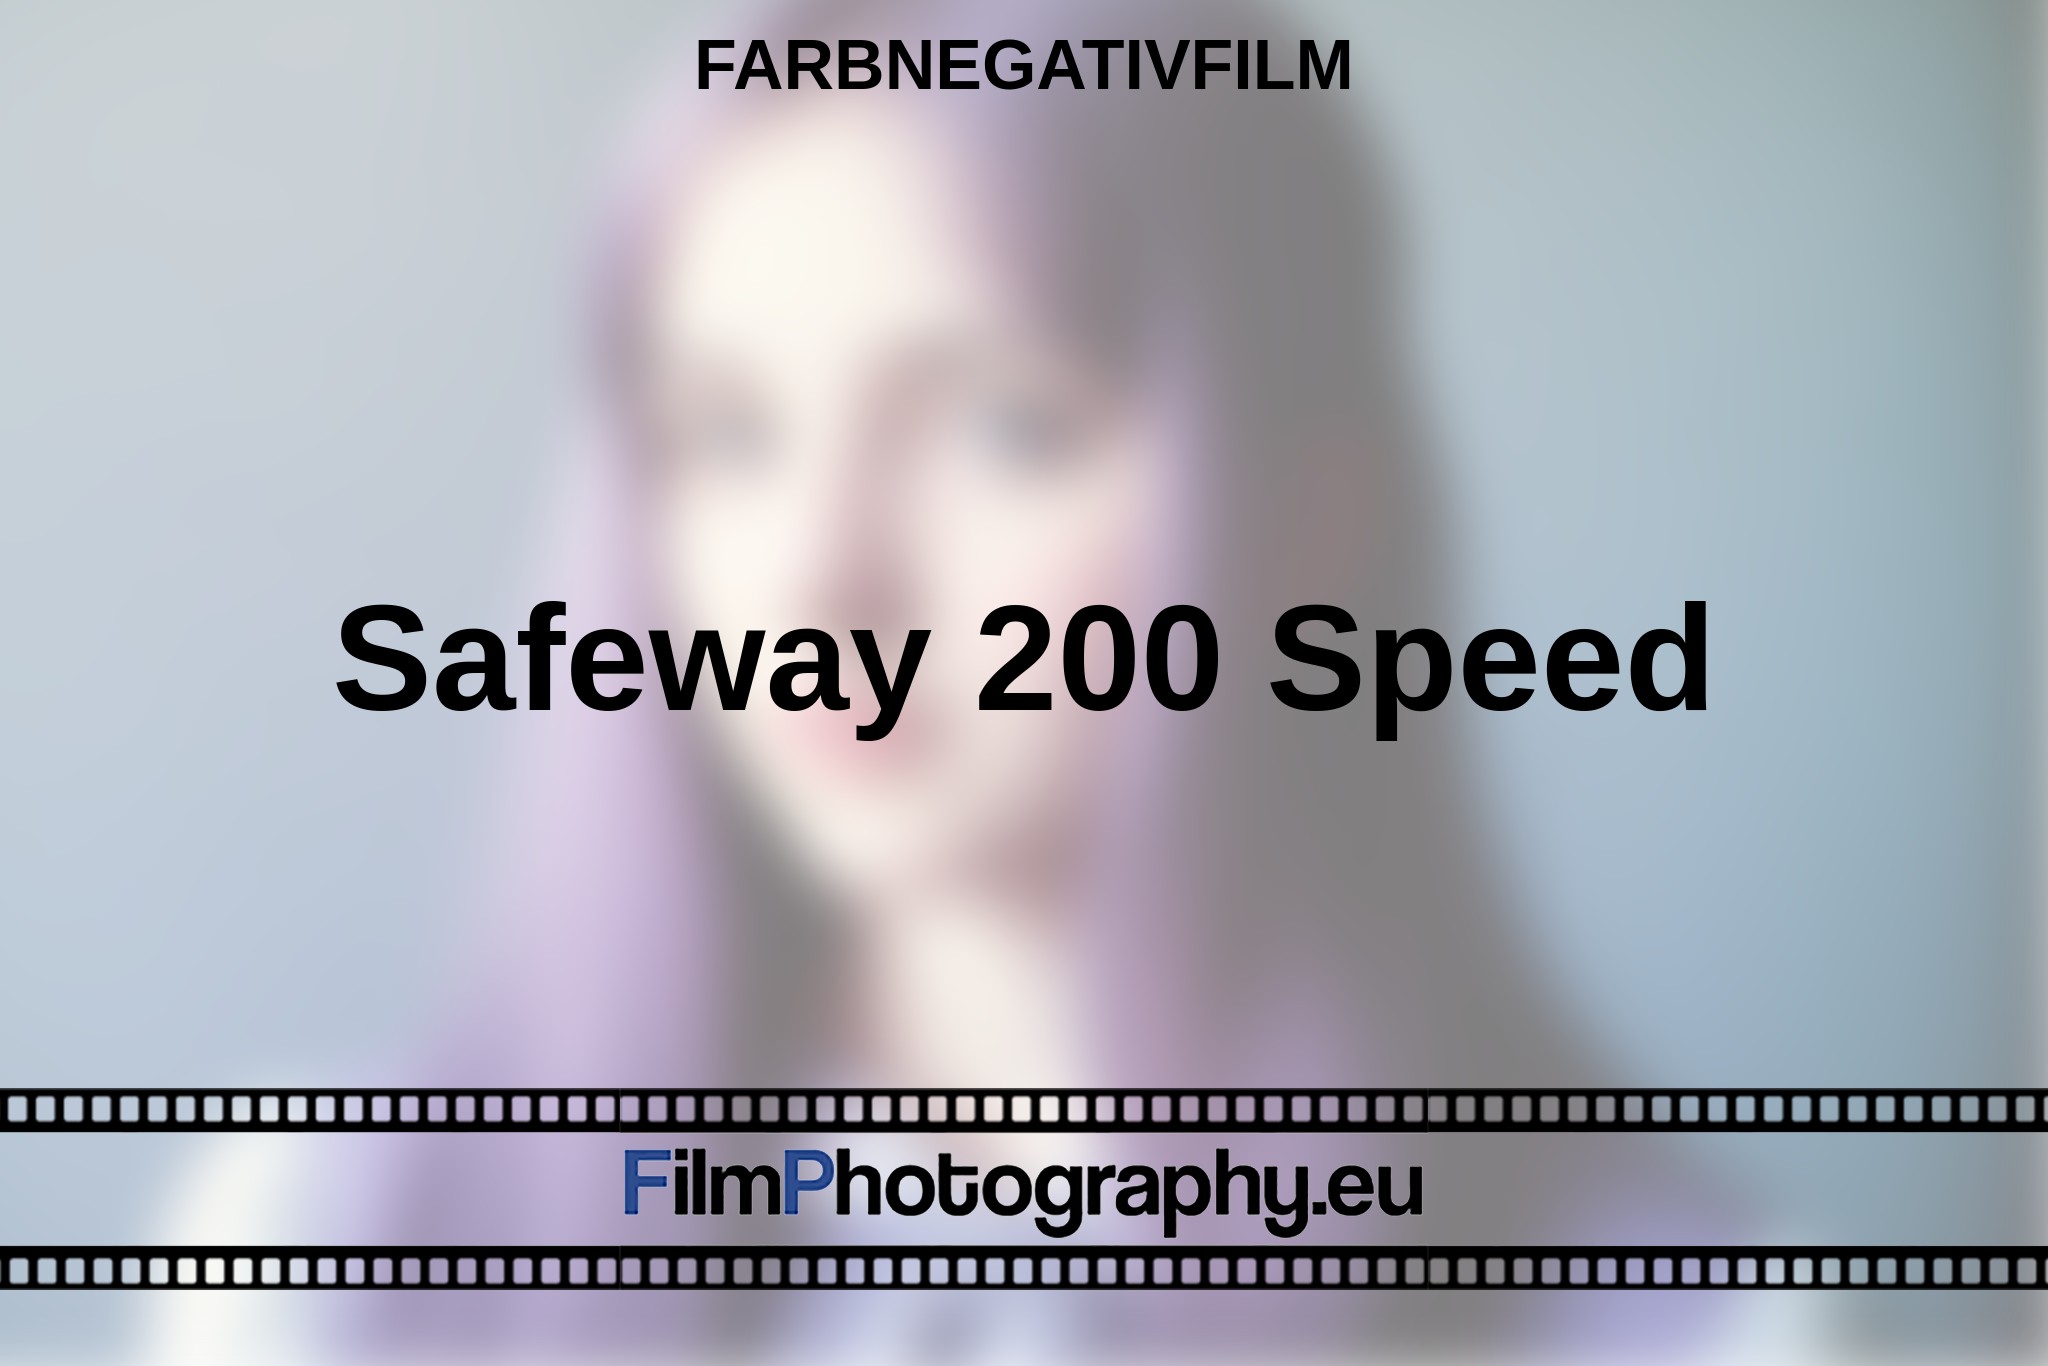 safeway-200-speed-farbnegativfilm-bnv.jpg